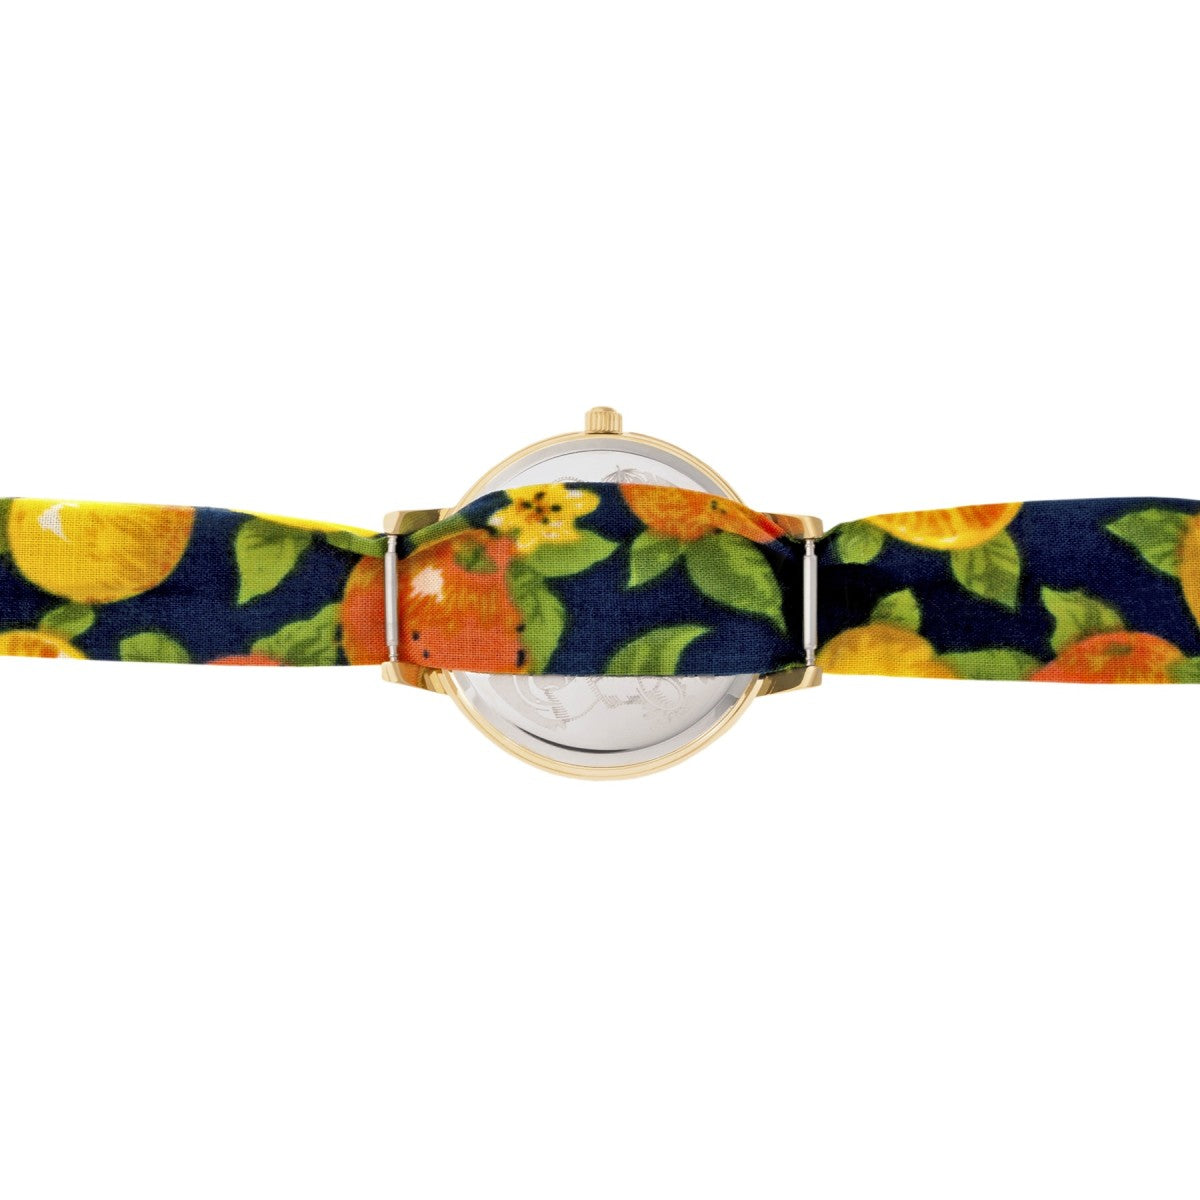 Boum Arc Floral-Print Wrap Watch - Gold/Navy - BOUBM5002